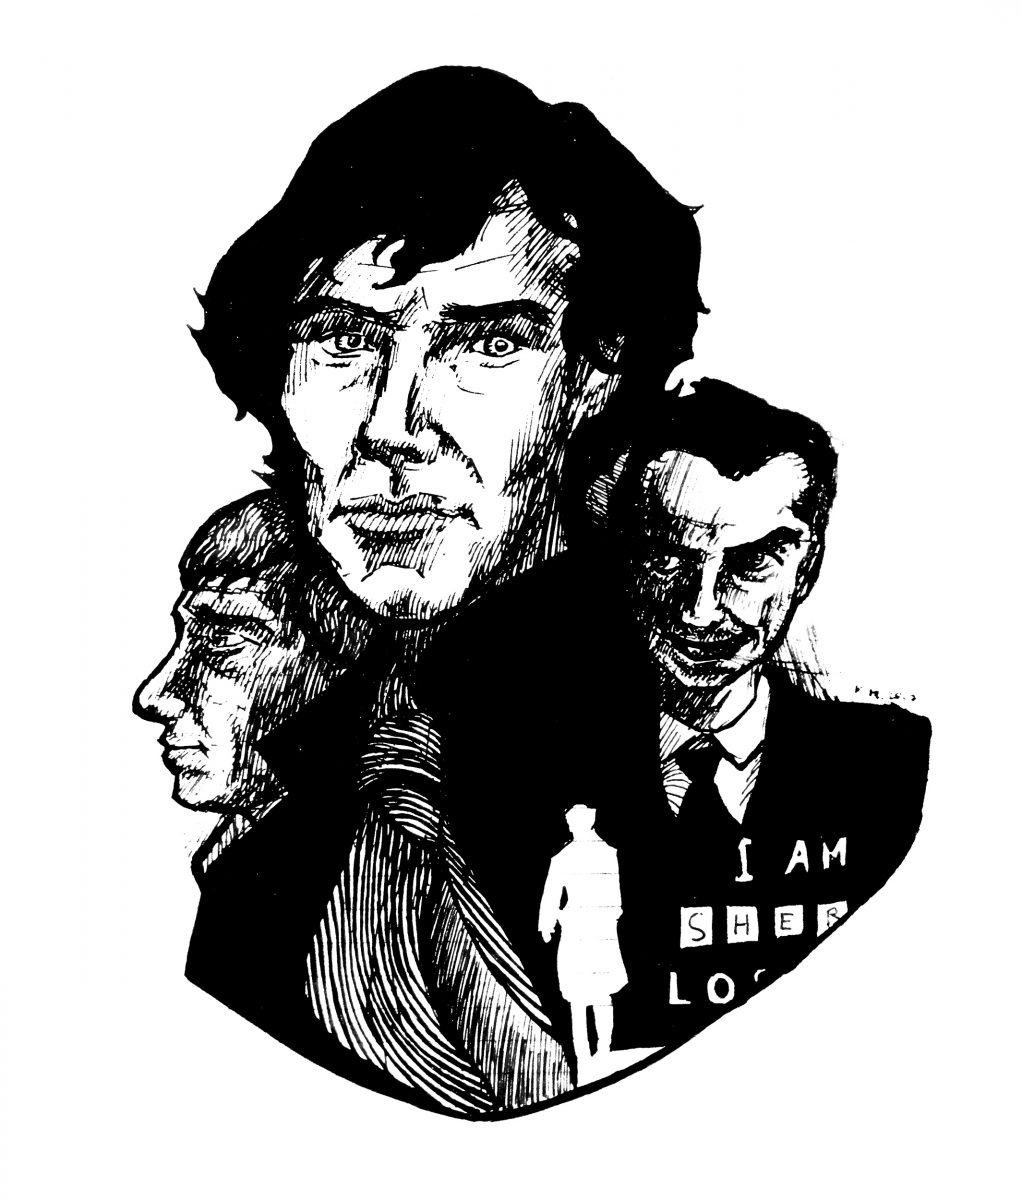 Портреты Шерлока Холмса, Джона Ватсона и Джеймса Мориарти из сериала BBC "Шерлок". Бумага, ручка.